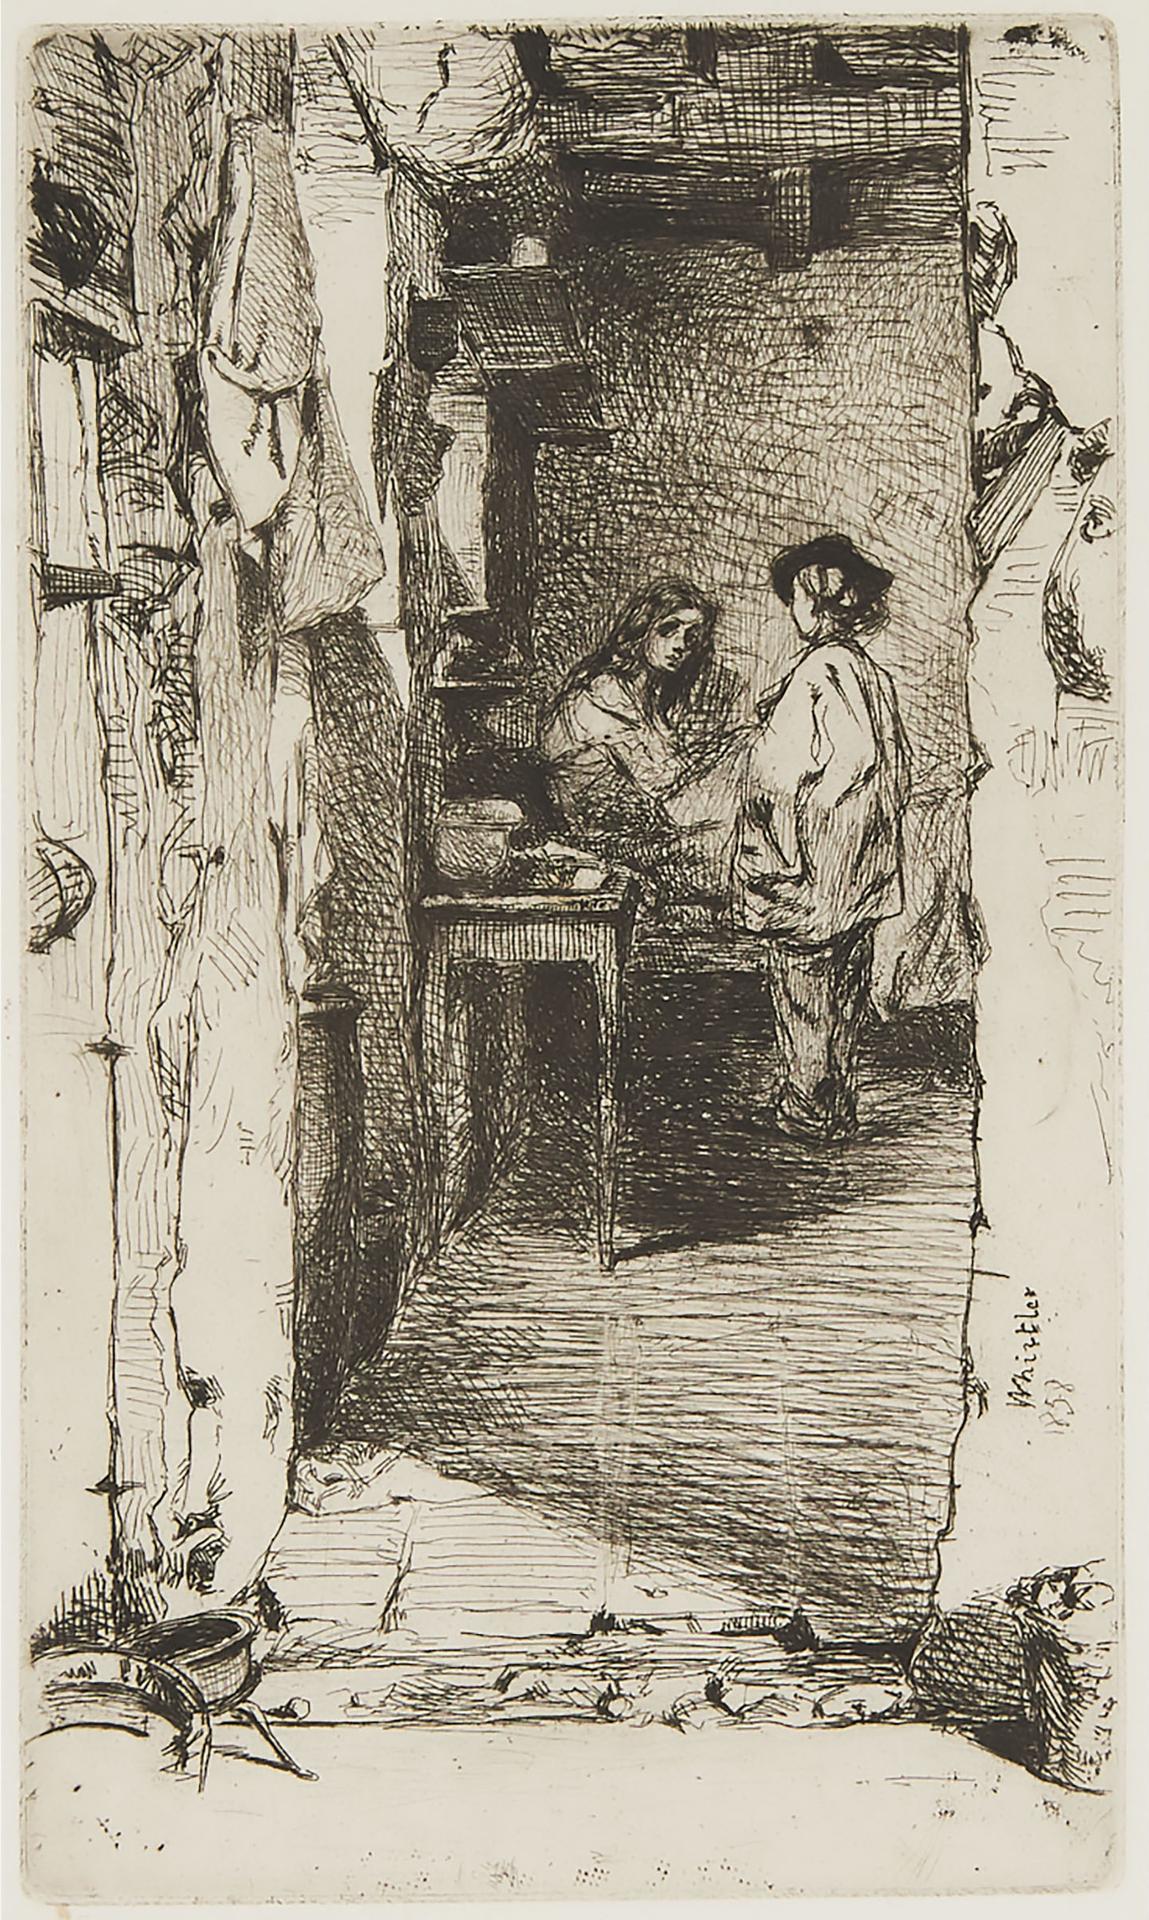 James Abbott McNeill Whistler (1834-1903) - THE RAG GATHERERS, 1858 [K, 23; G, 29]